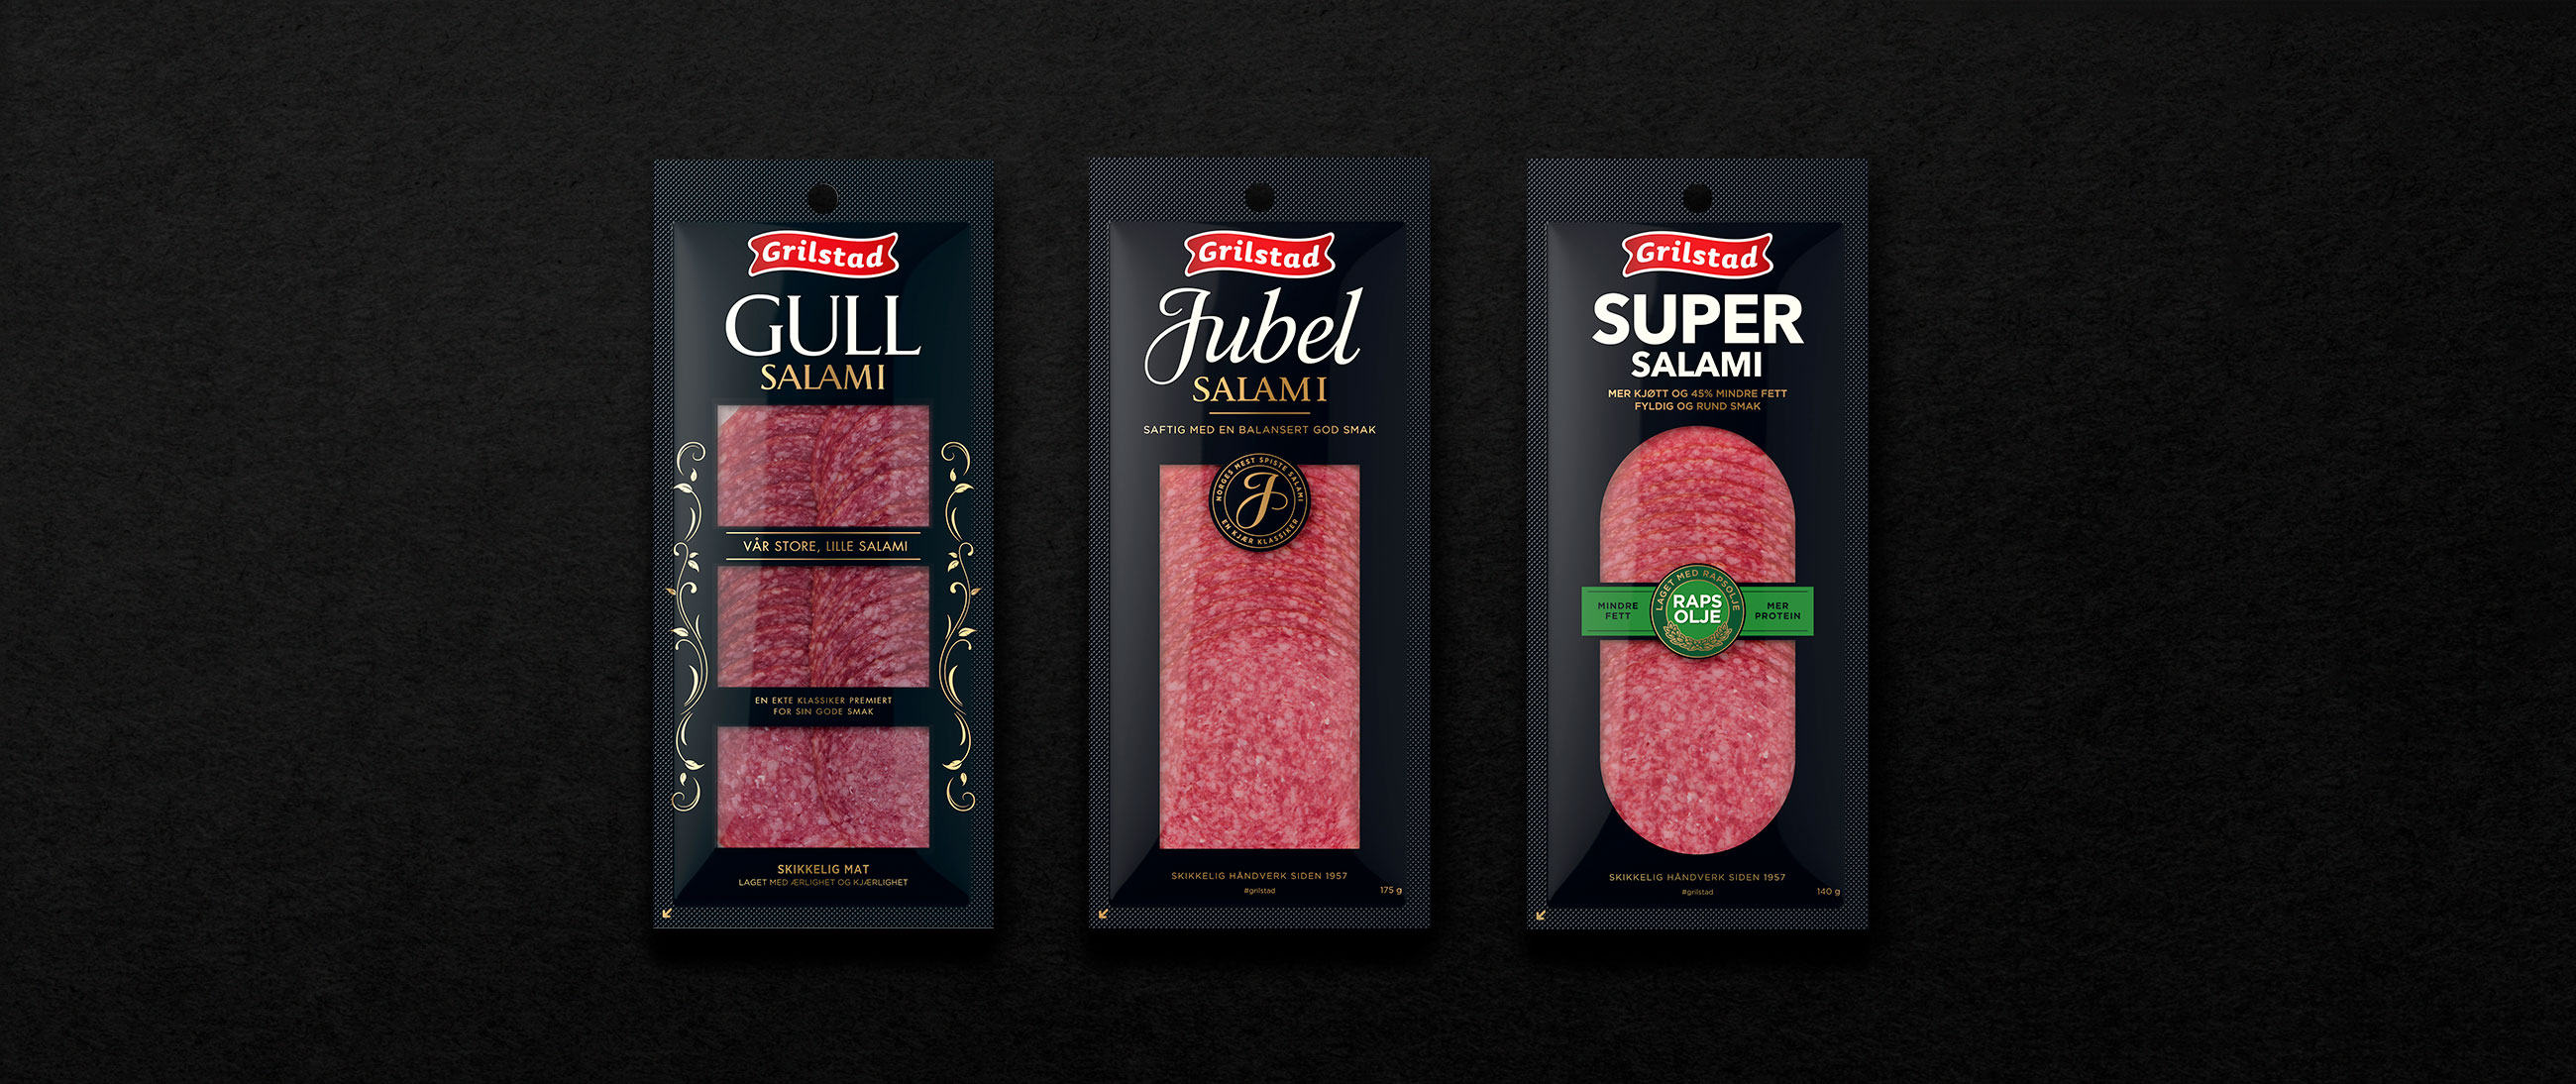 Grilstad Gull salami, jubel salami og super salami emballasje packaging design